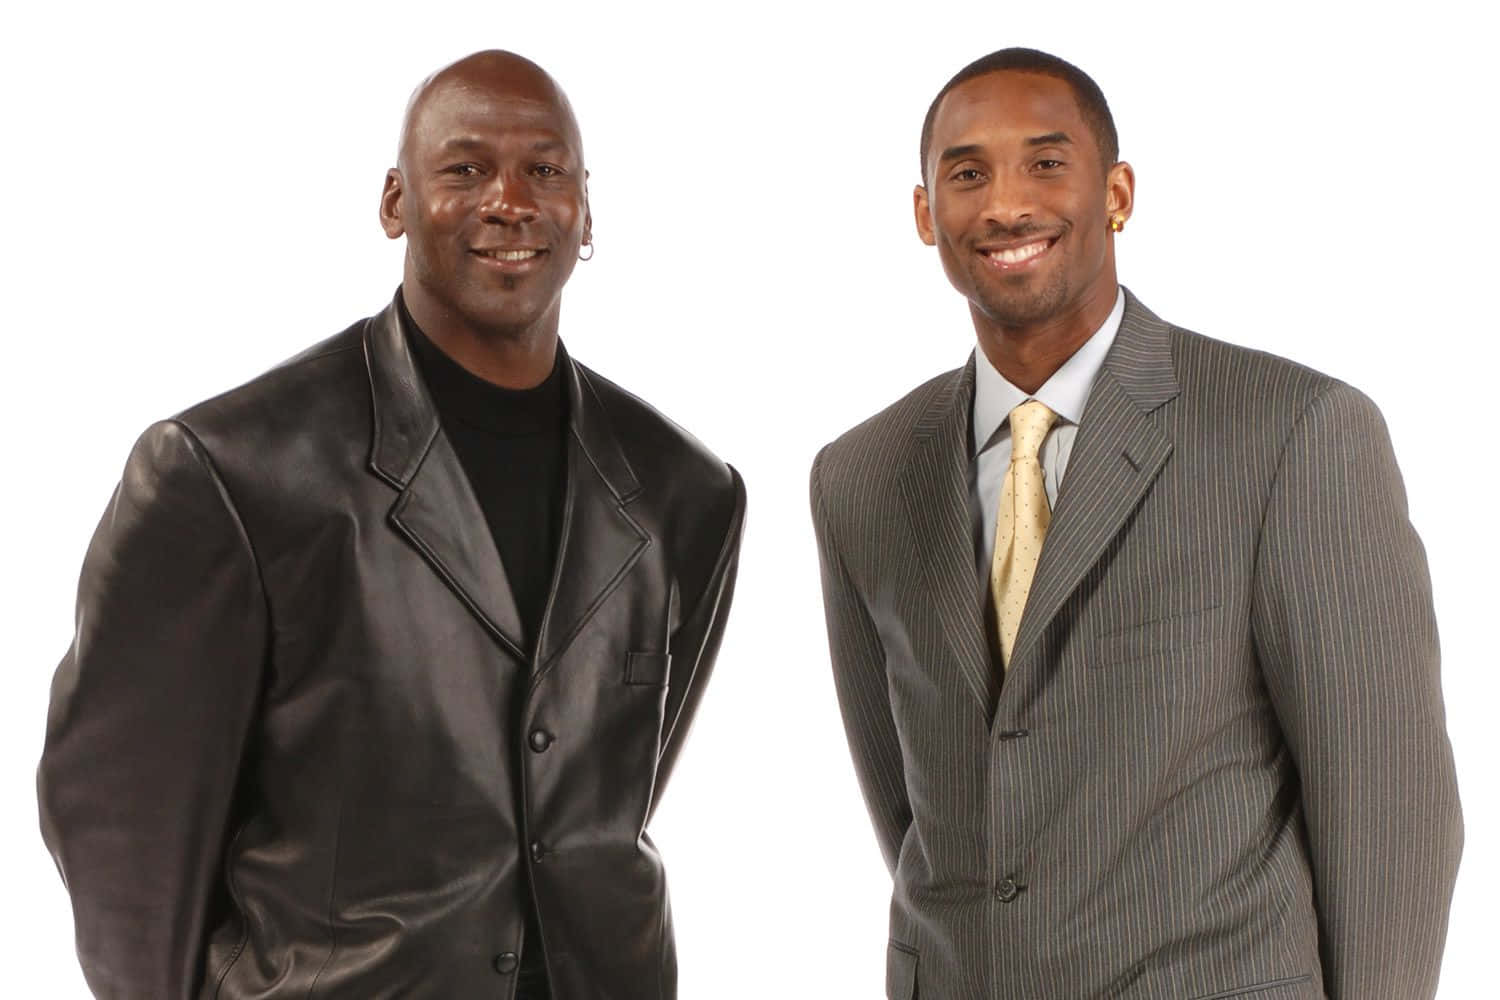 Ilustraciónminimalista De Los Atletas De Baloncesto Kobe Bryant Y Michael Jordan. Fondo de pantalla